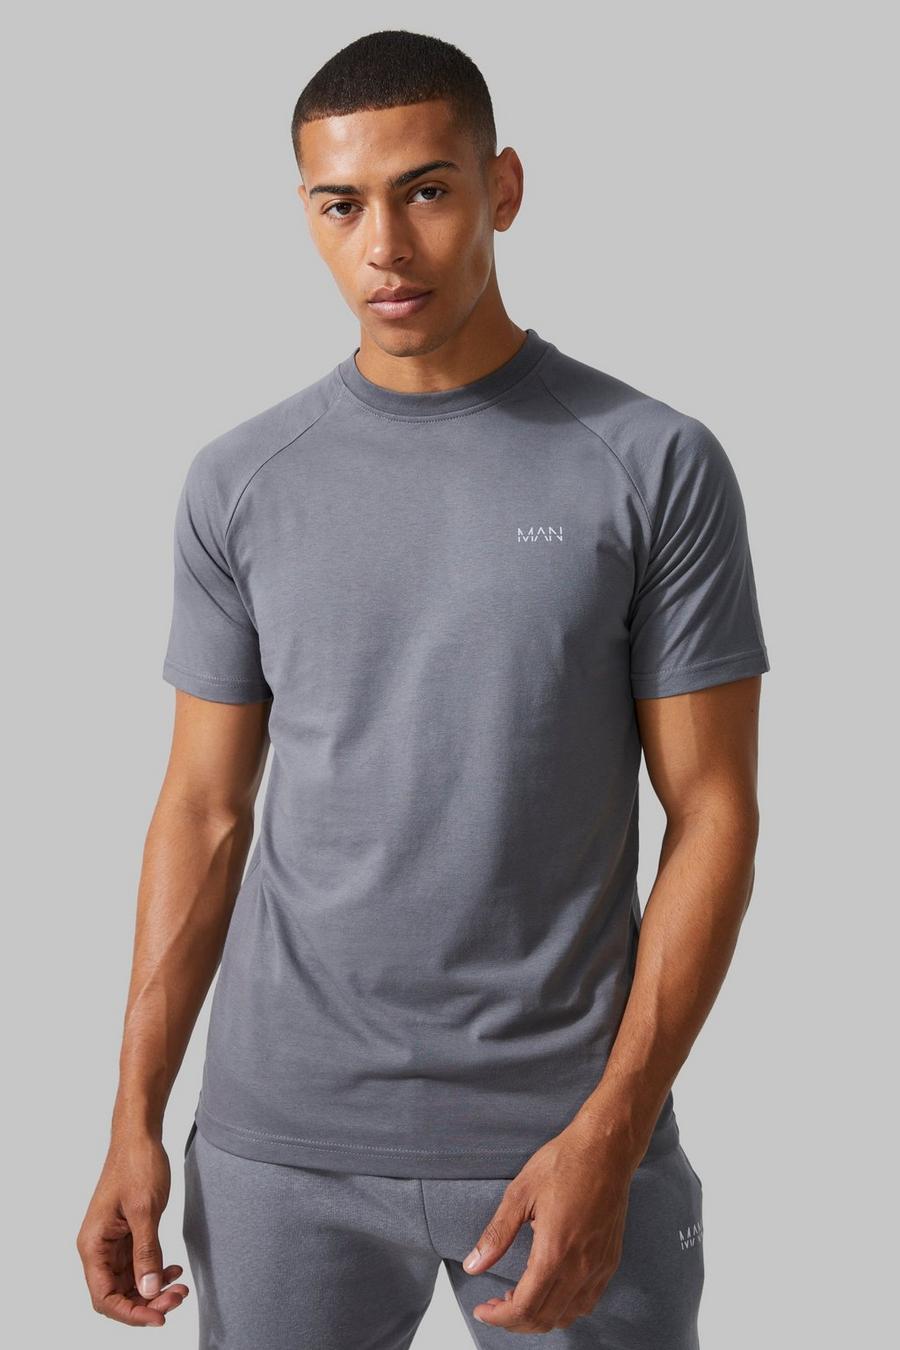 Charcoal grå Man Active Gym Raglan T-shirt